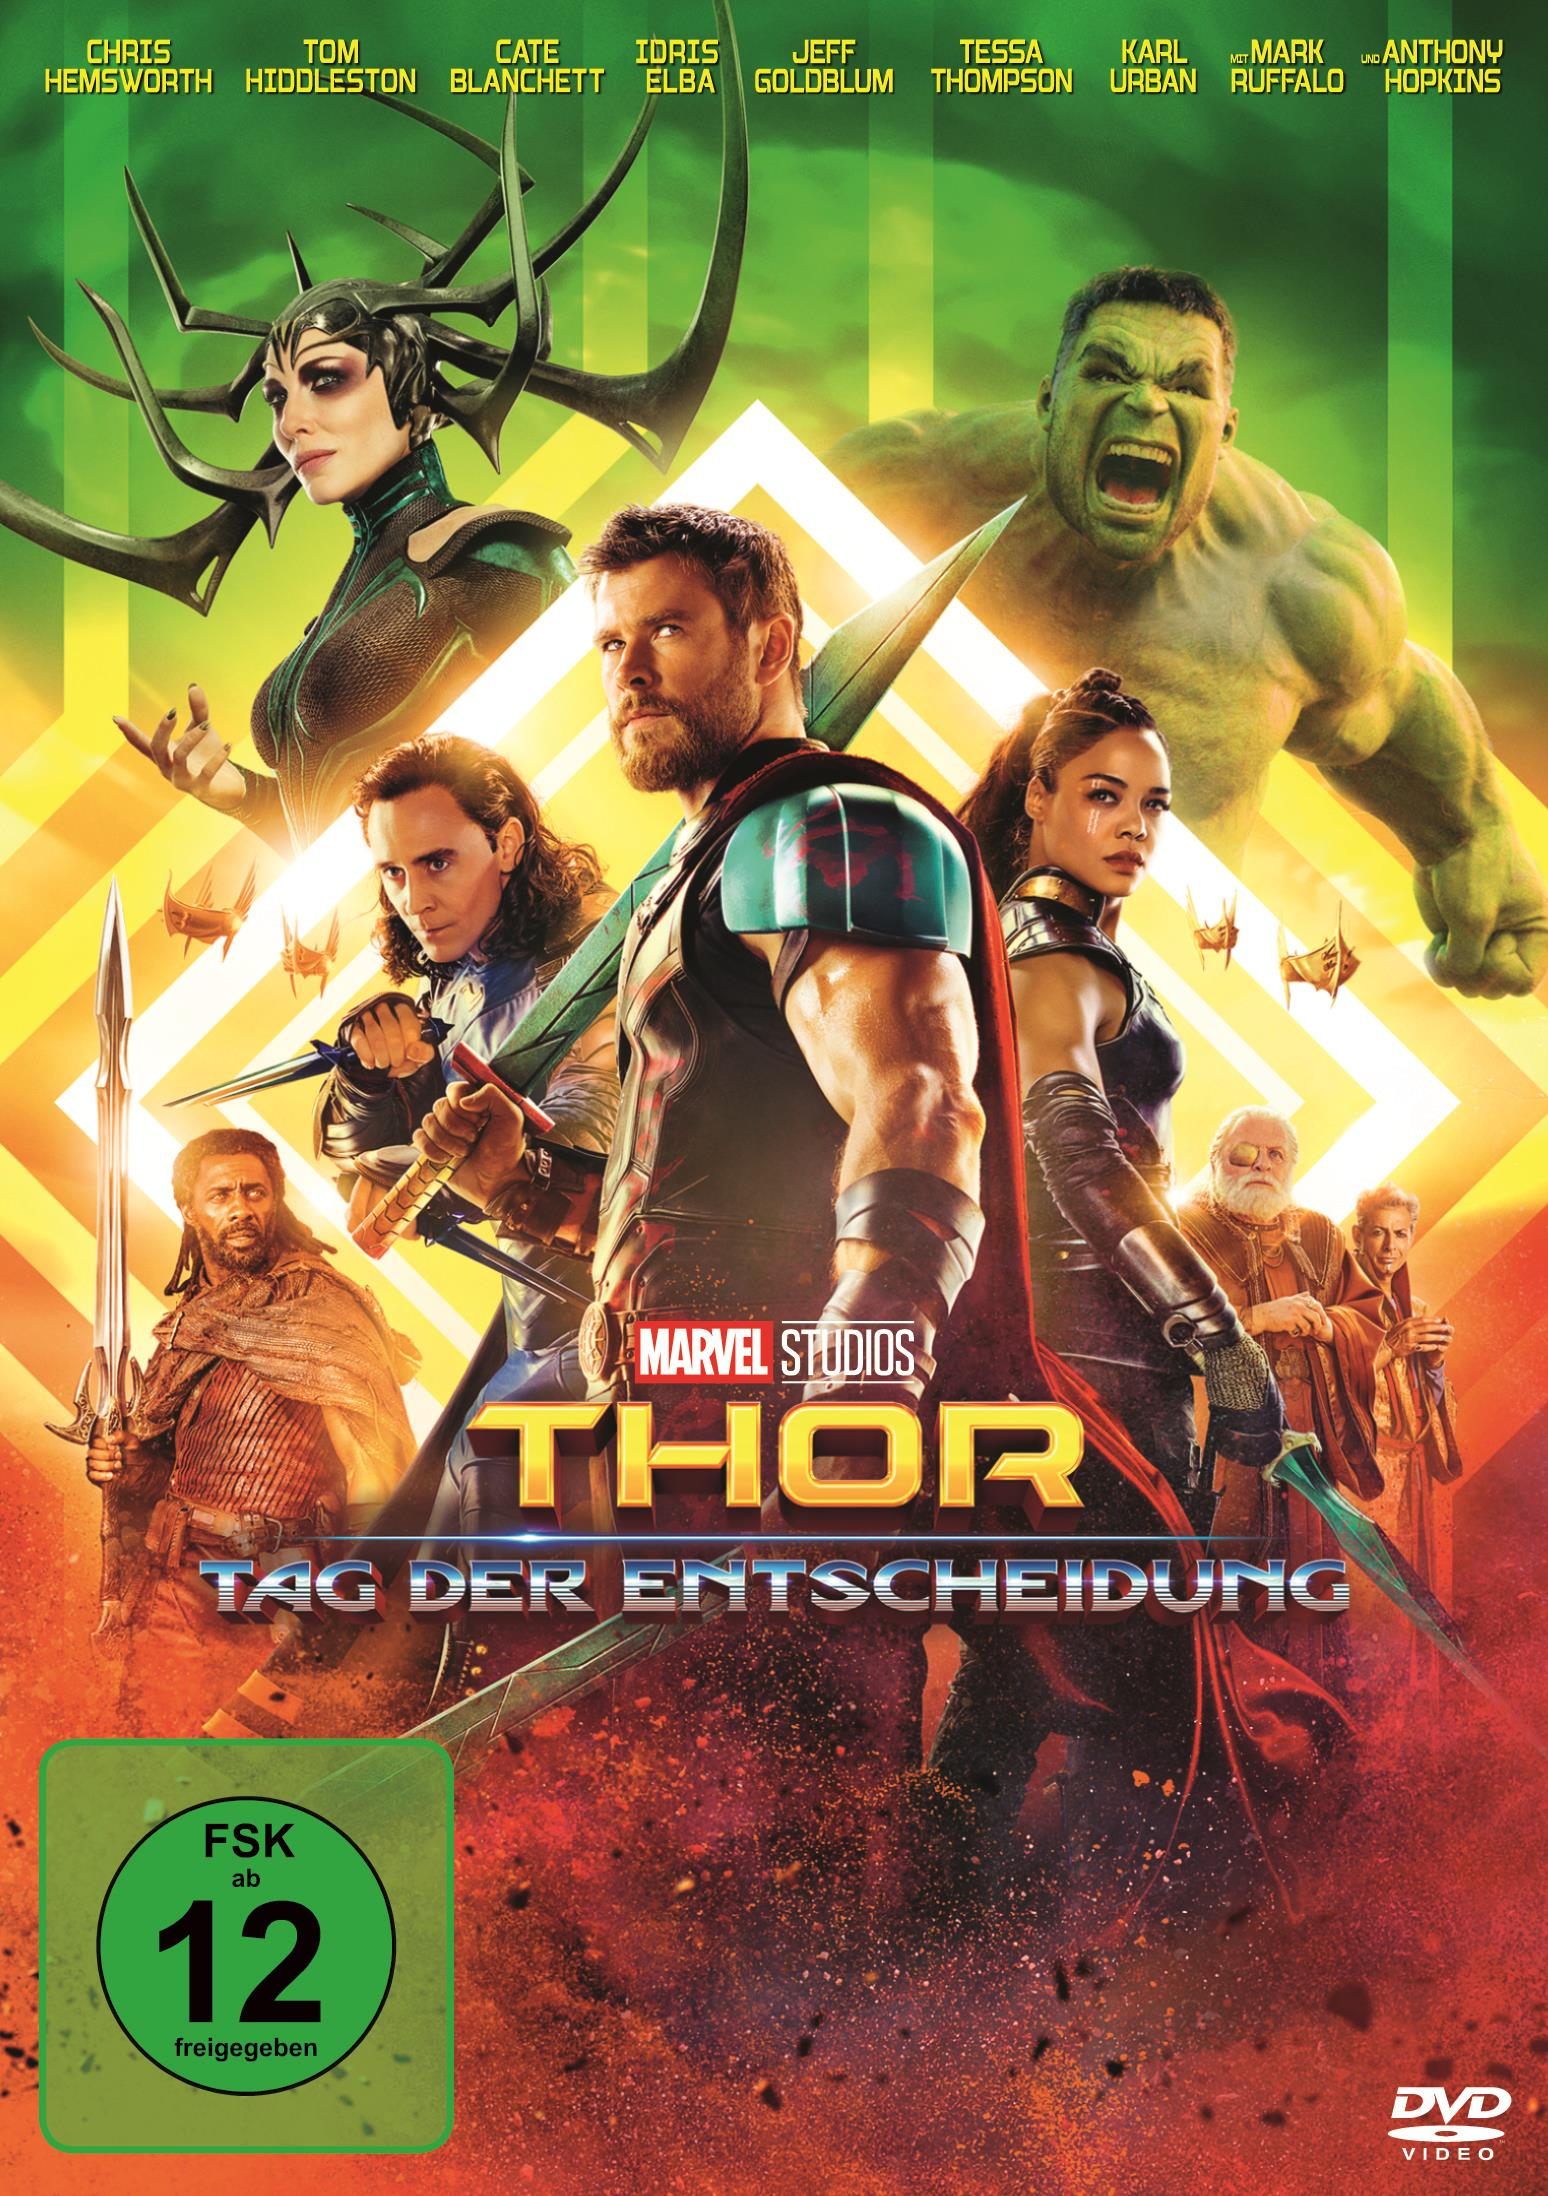 der Tag DVD Entscheidung Thor: